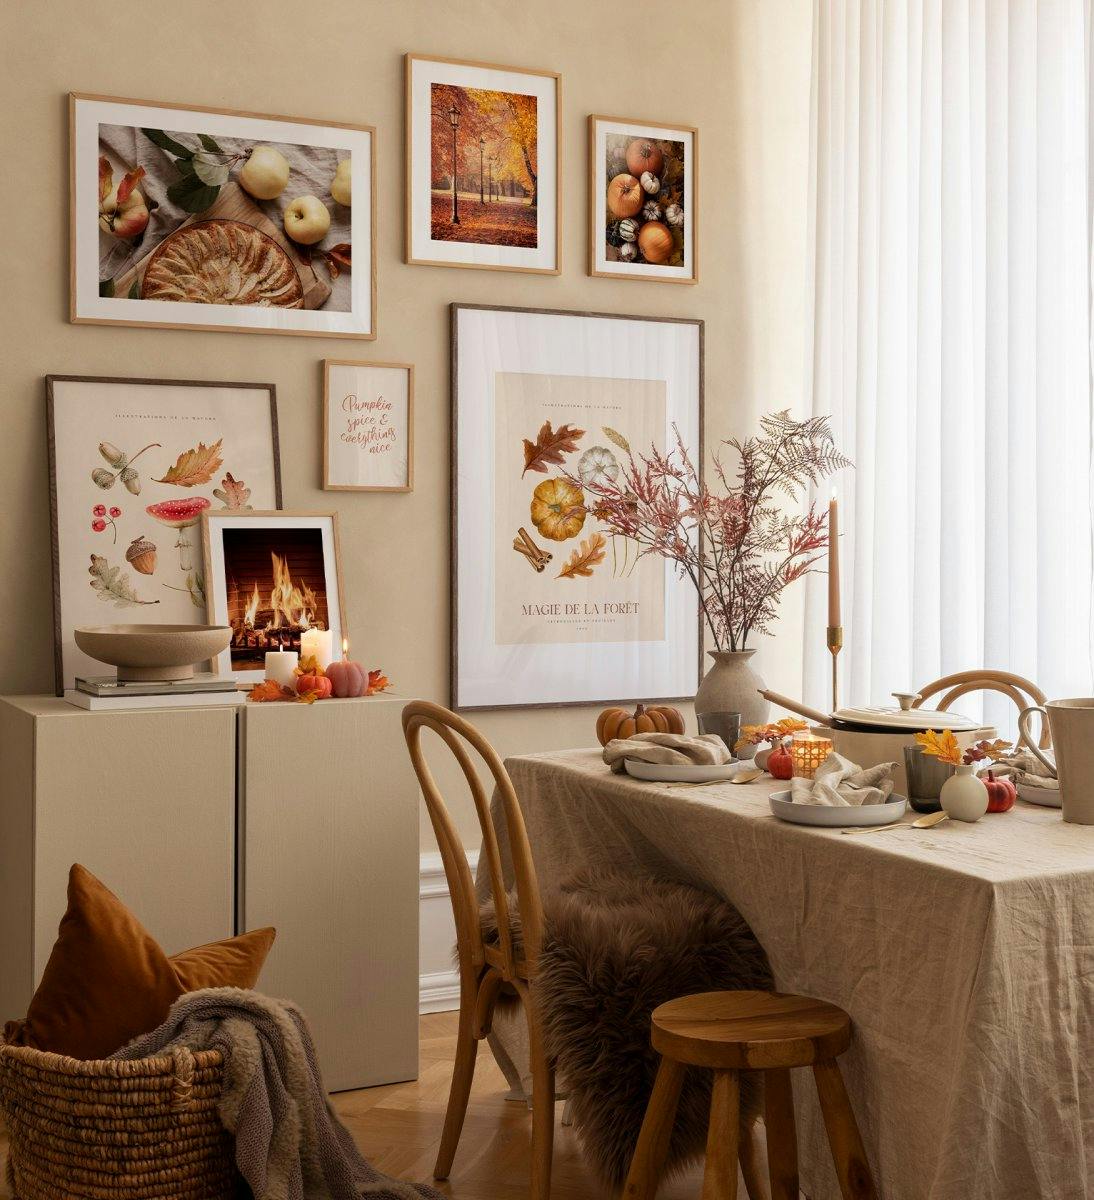 Transformeer je woonkamer in een gezellige ruimte met deze fotowand, mooi gepresenteerd in eiken lijsten!